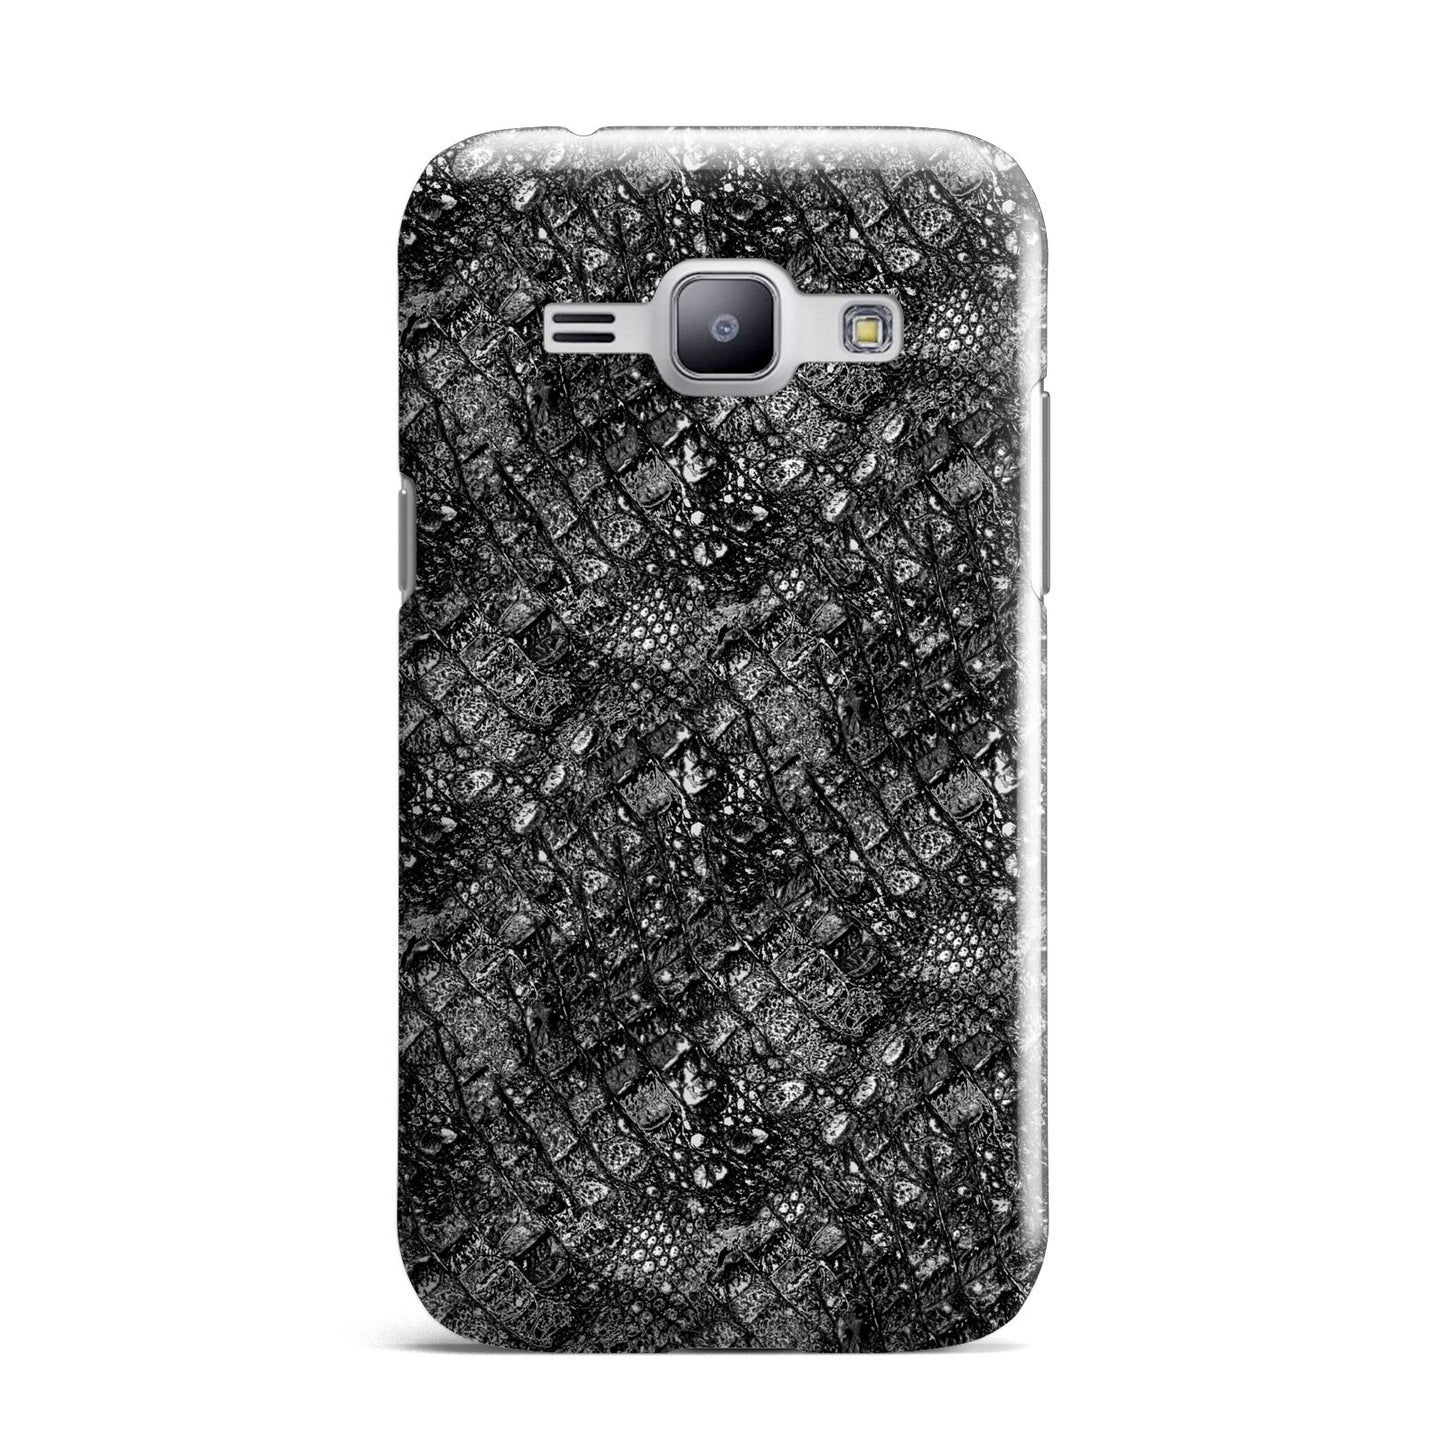 Snakeskin Design Samsung Galaxy J1 2015 Case